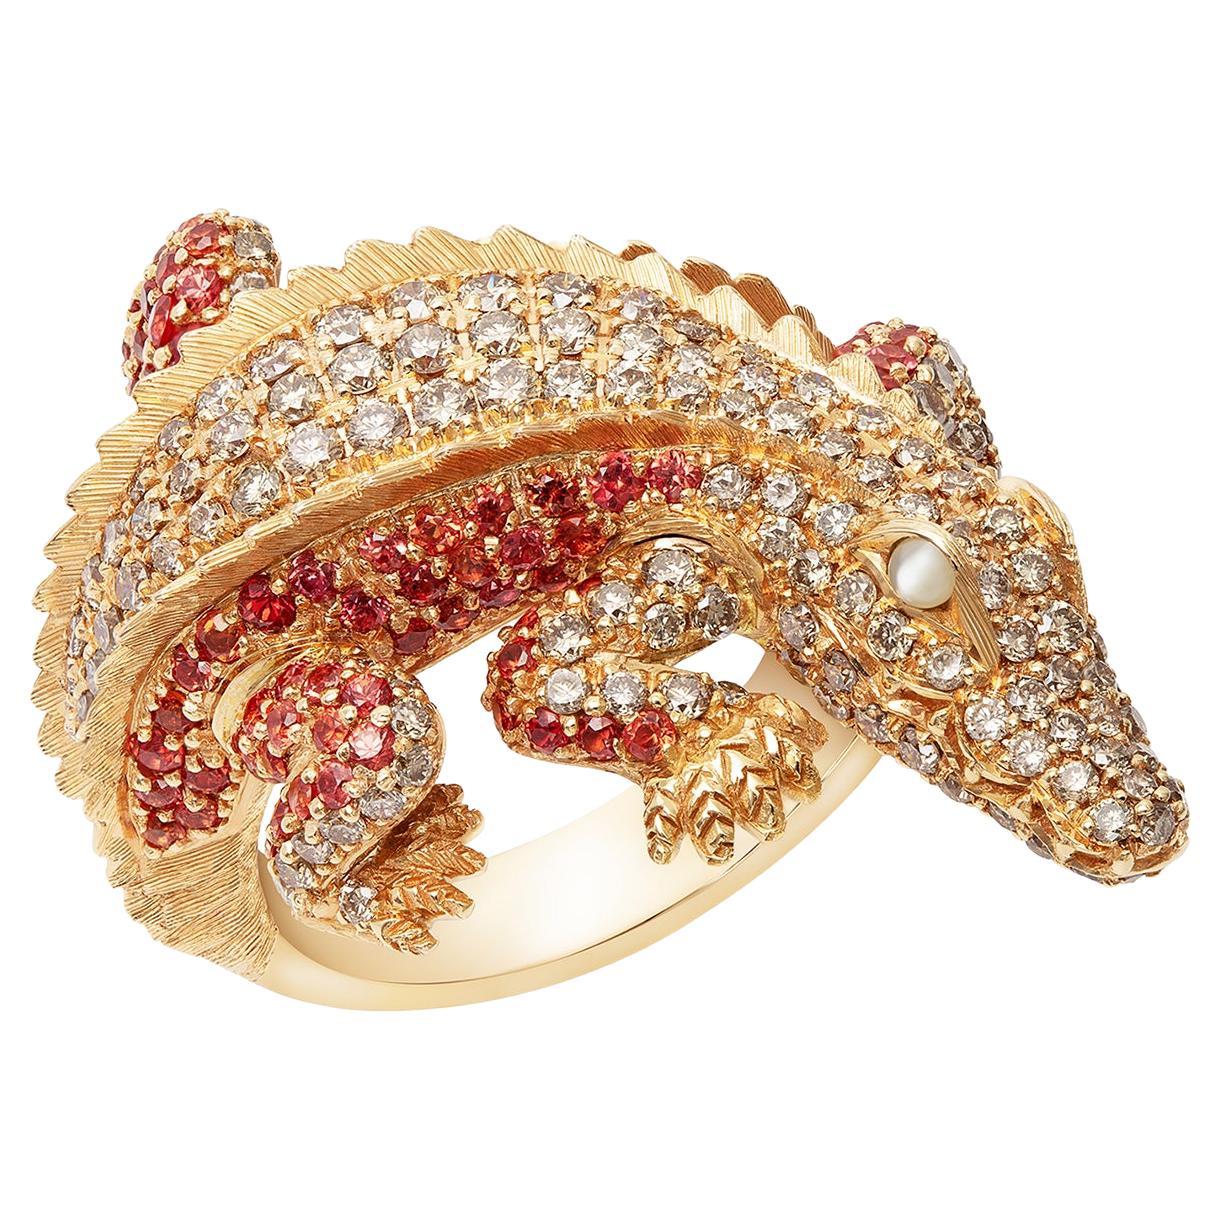 Authentischer Alligator-Diamant-Ring aus 18 Karat Gold für ihr